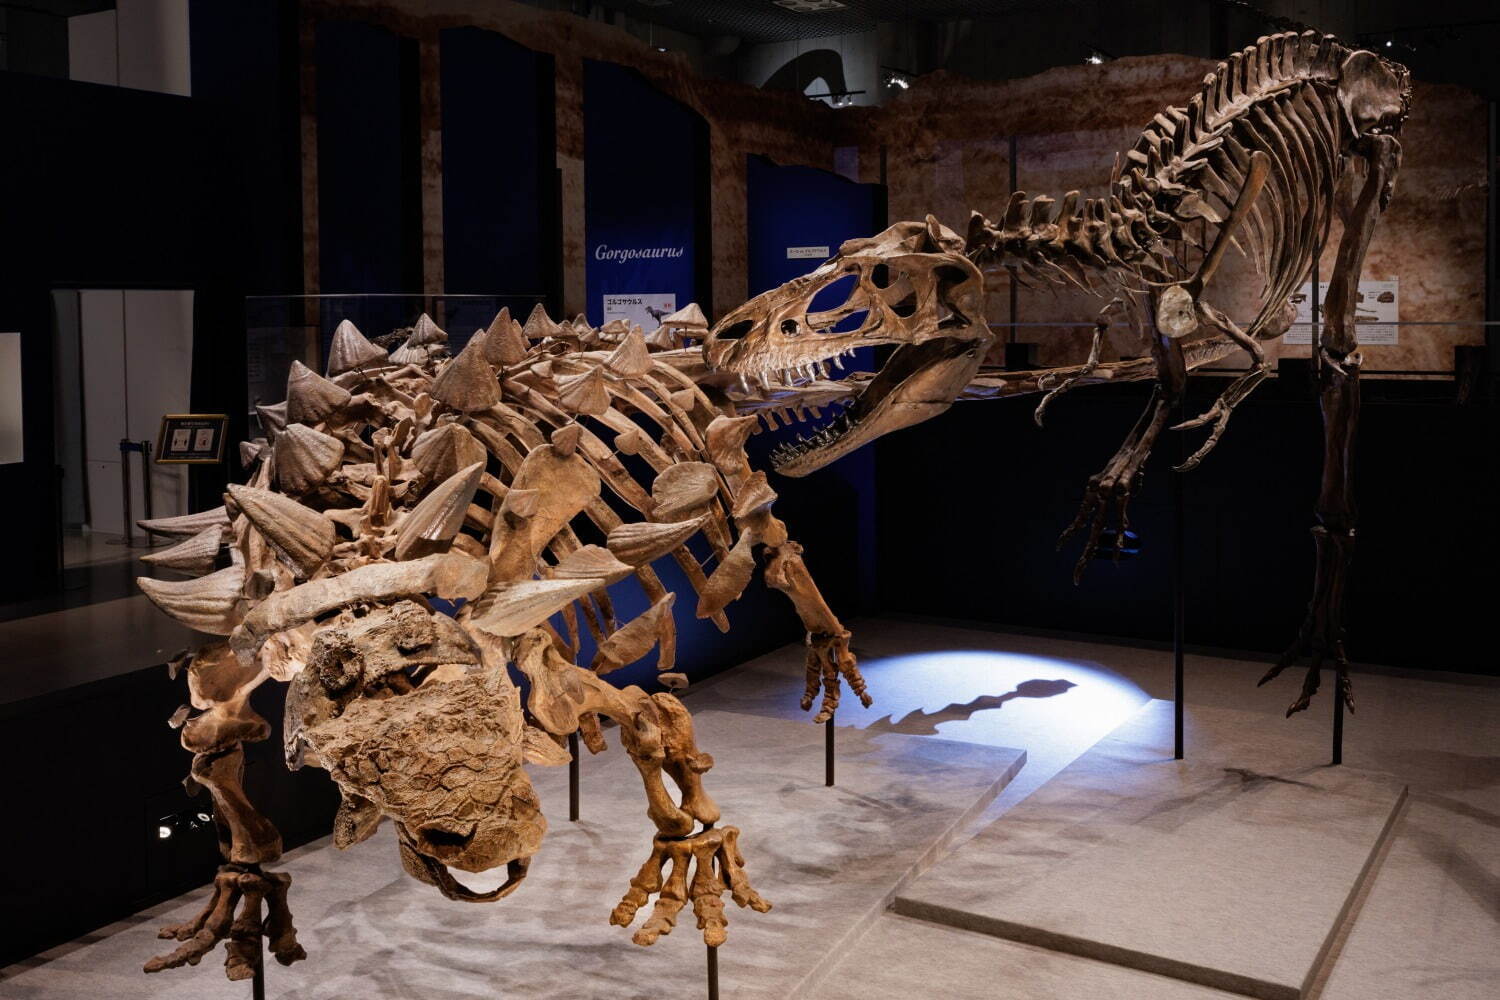 ズール(左)とゴルゴサウルス(右)の対峙シーンを再現した全身復元骨格
(東京会場 撮影：山本倫子)